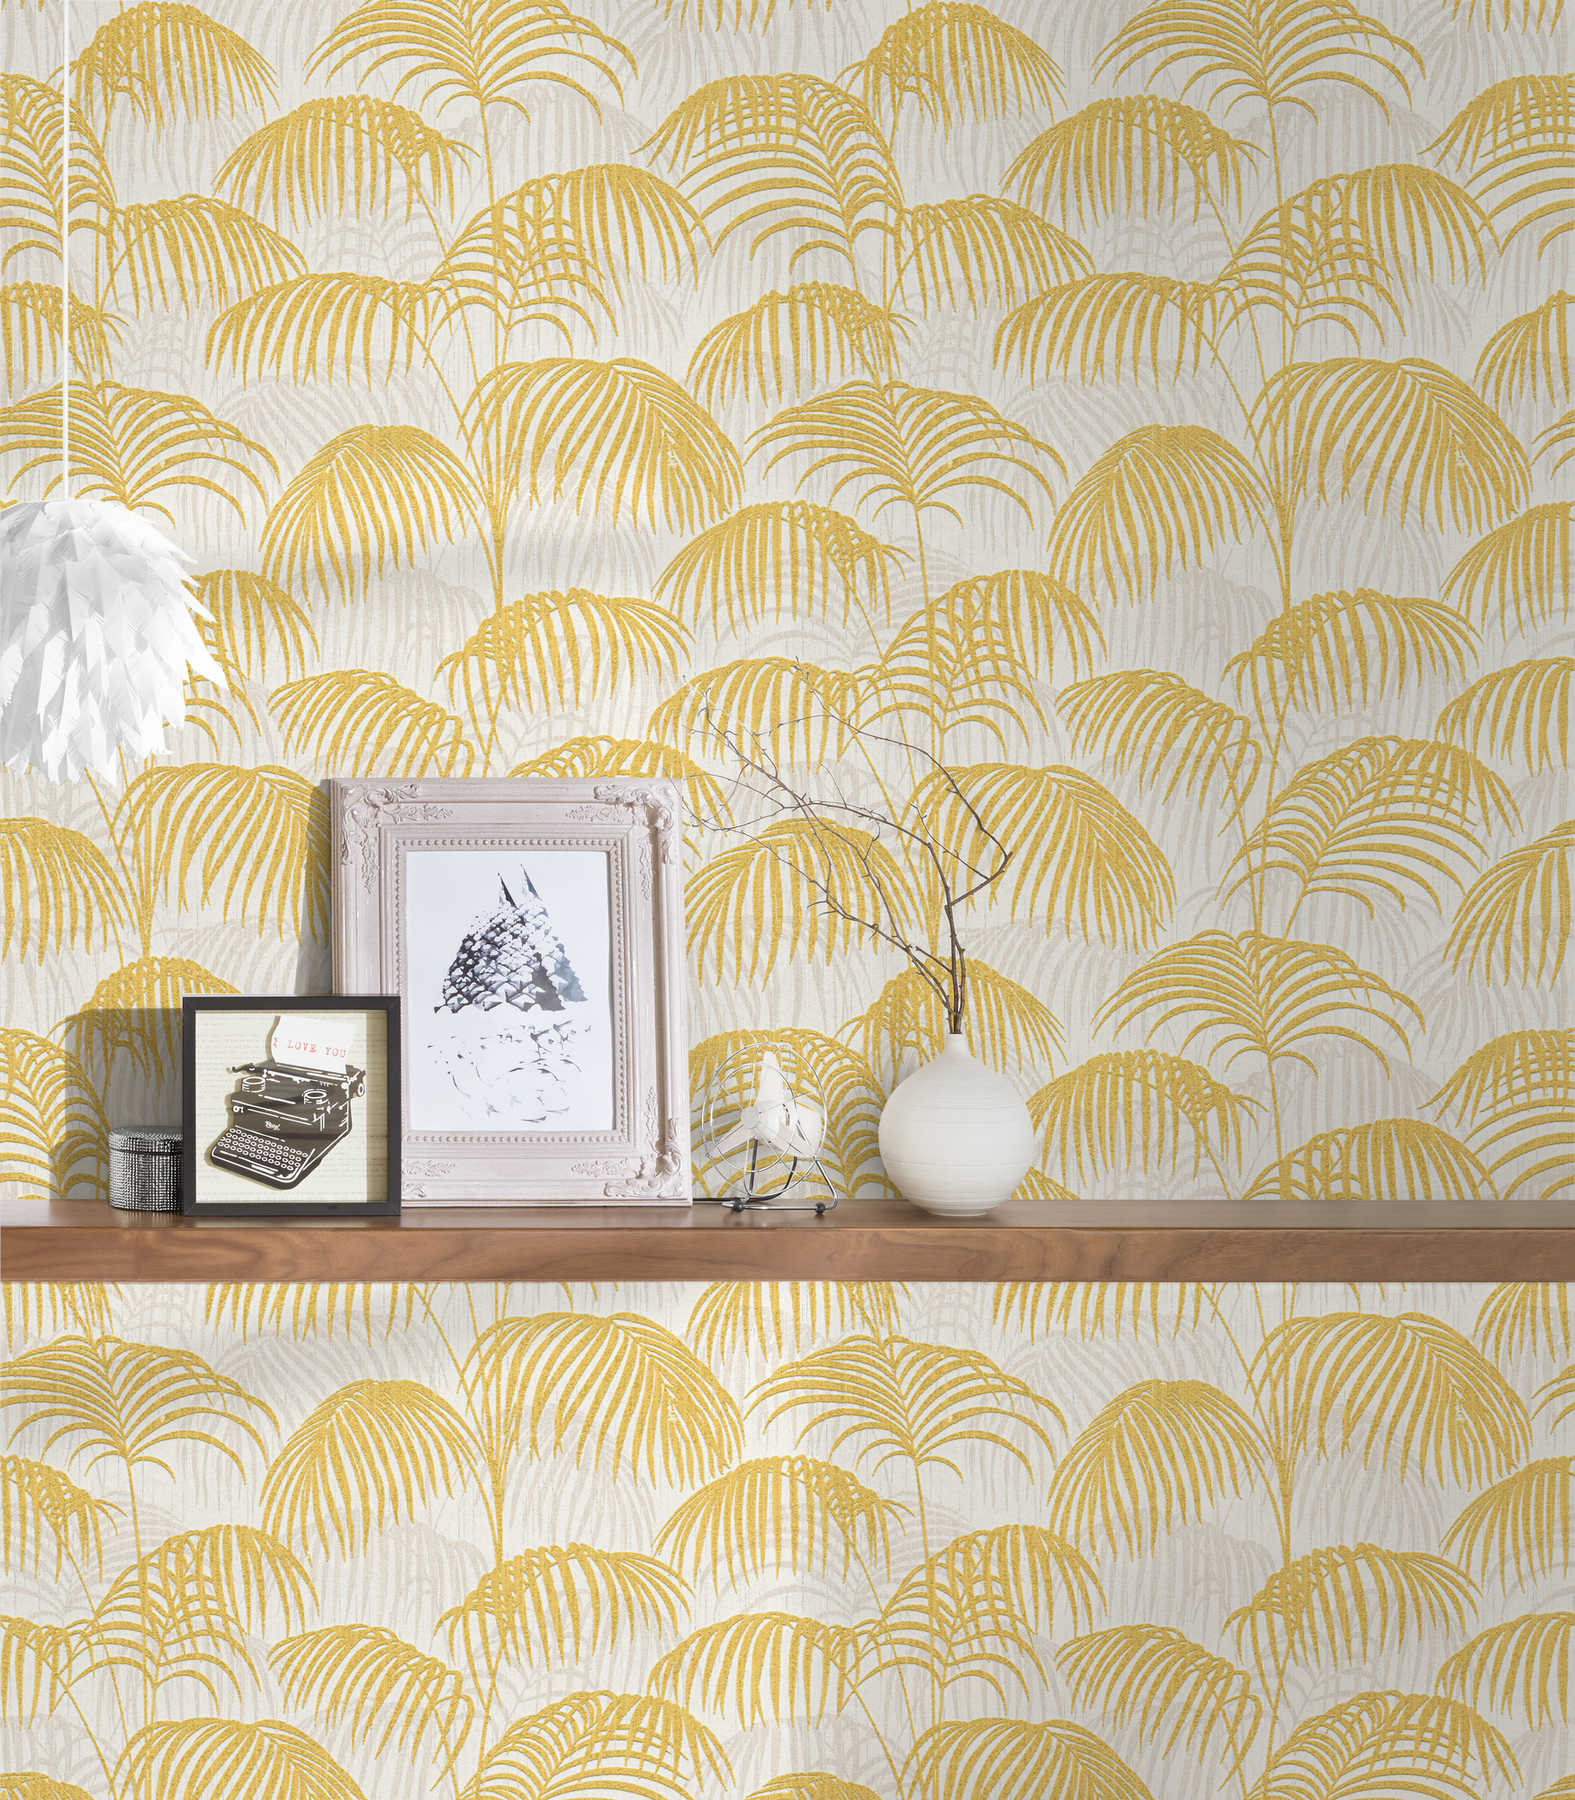             Papel pintado de palmeras con efecto dorado y diseño de estructura - metálico, blanco
        